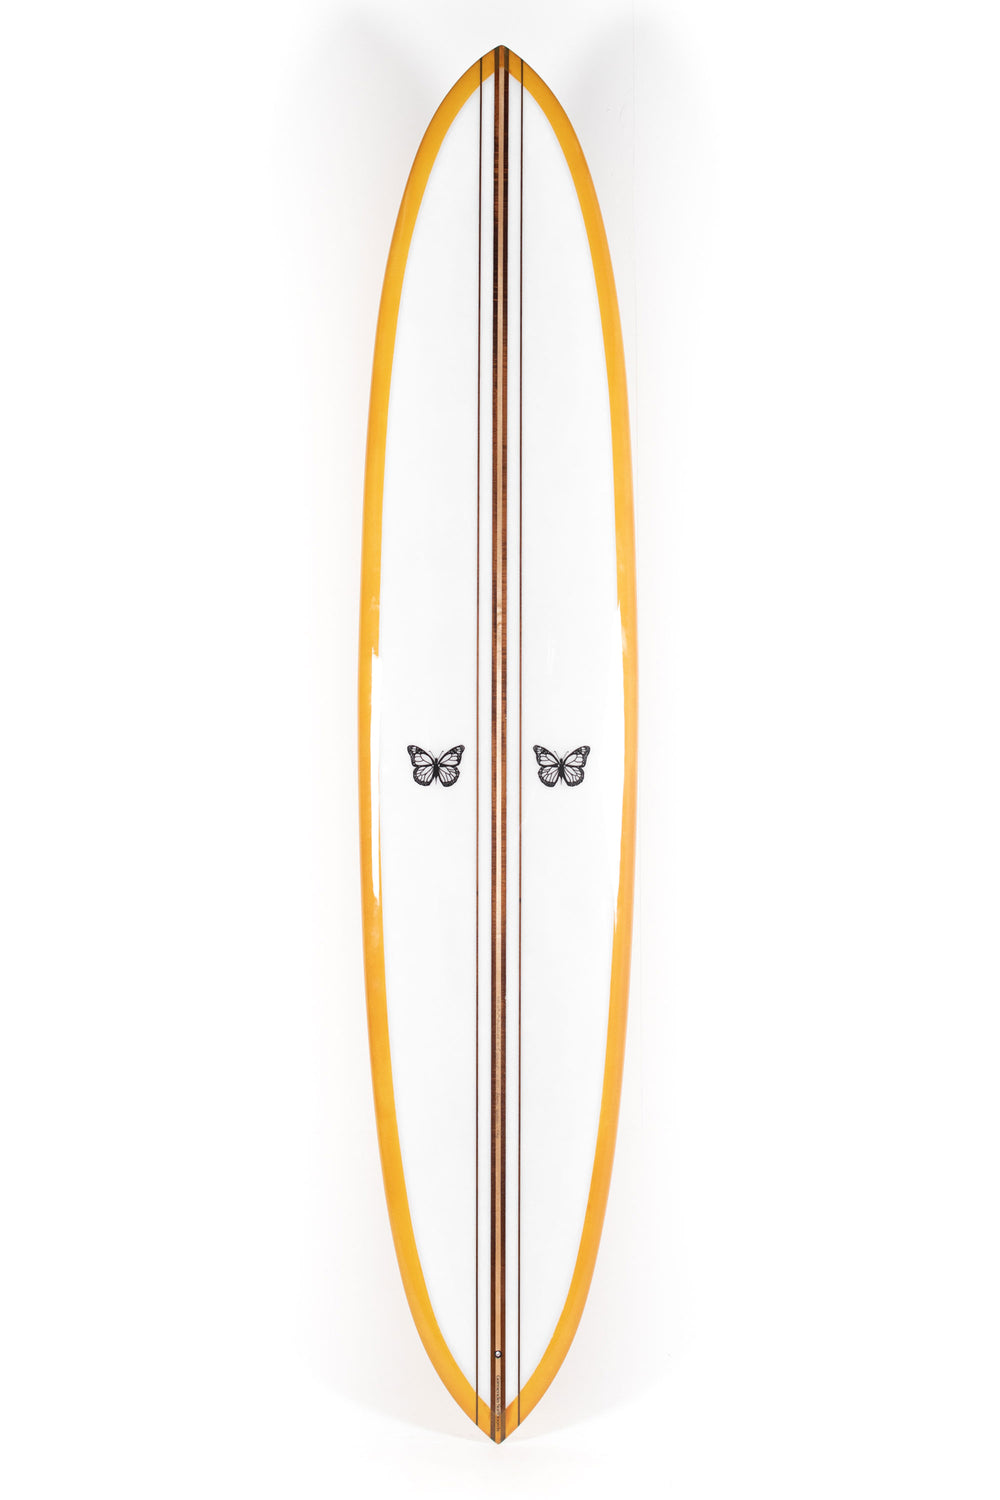 Pukas Surf Shop - Garmendia Surfboards - MINI GLIDER DREAMER - 9’6 x 22 7/8 x 3 1/4 - Ref.MINIGLIDER96